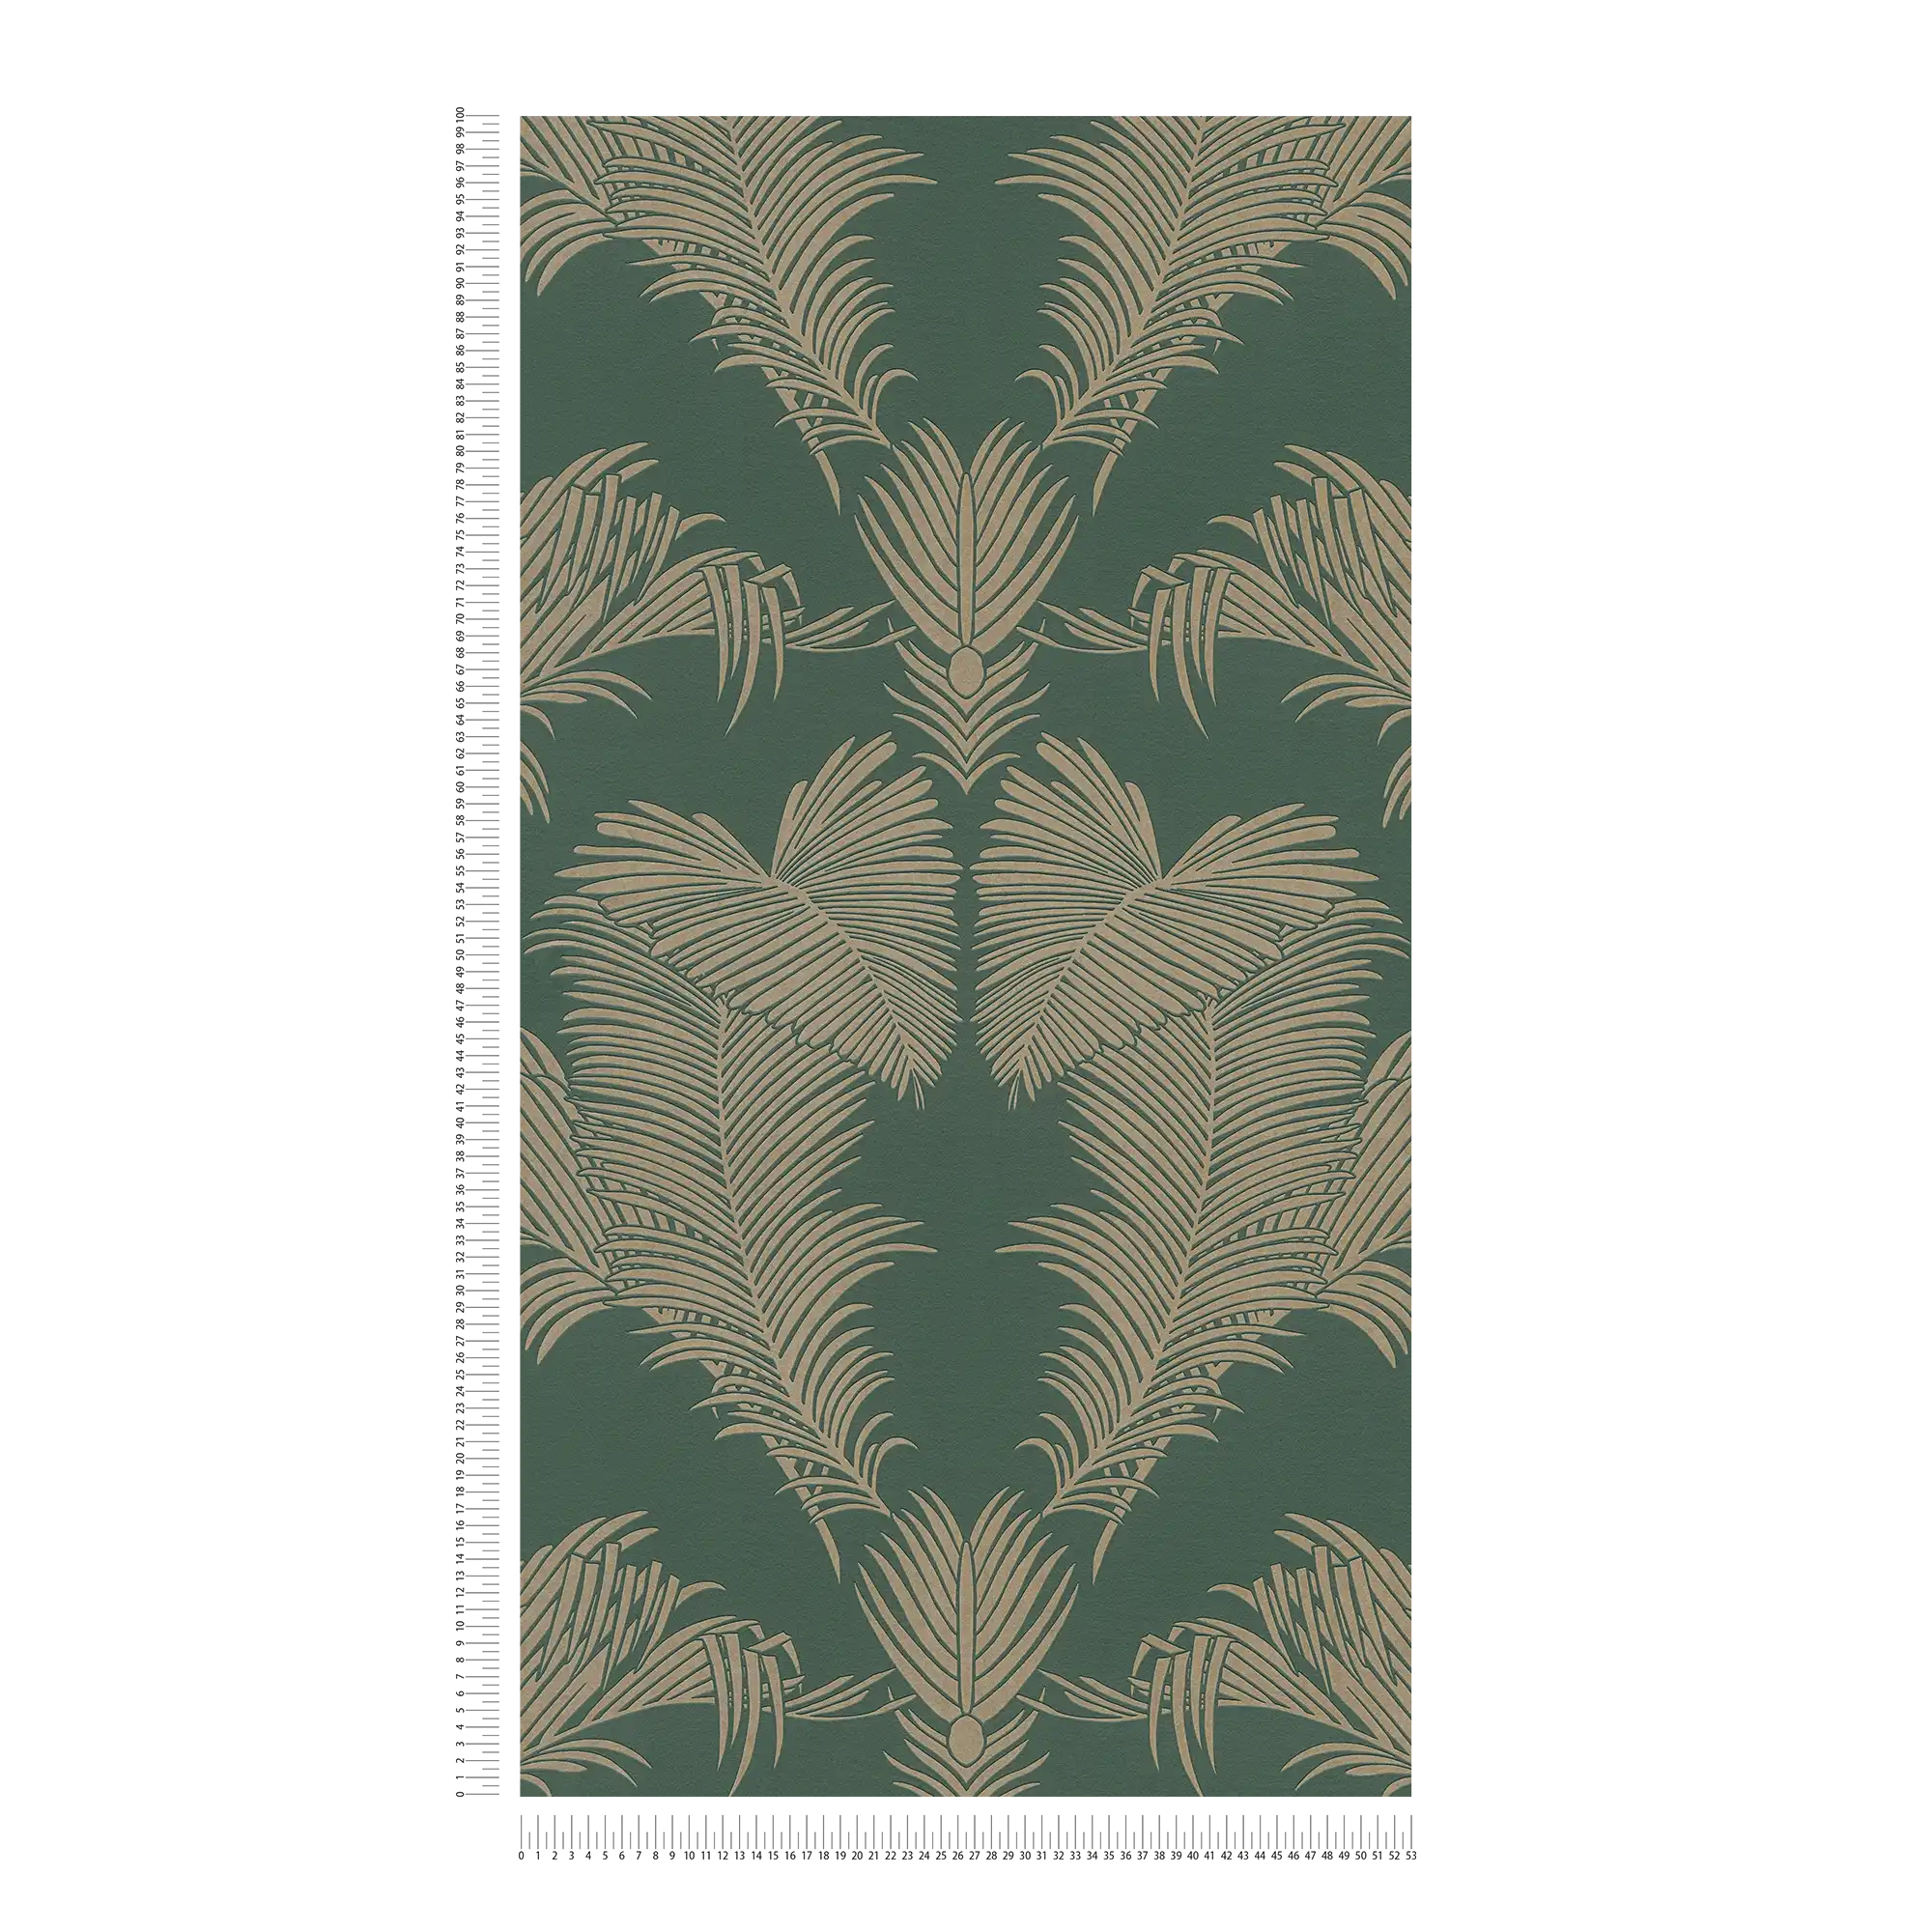             Papier peint intissé vert sapin & or avec motif feuilles de palmier - vert, métallique
        